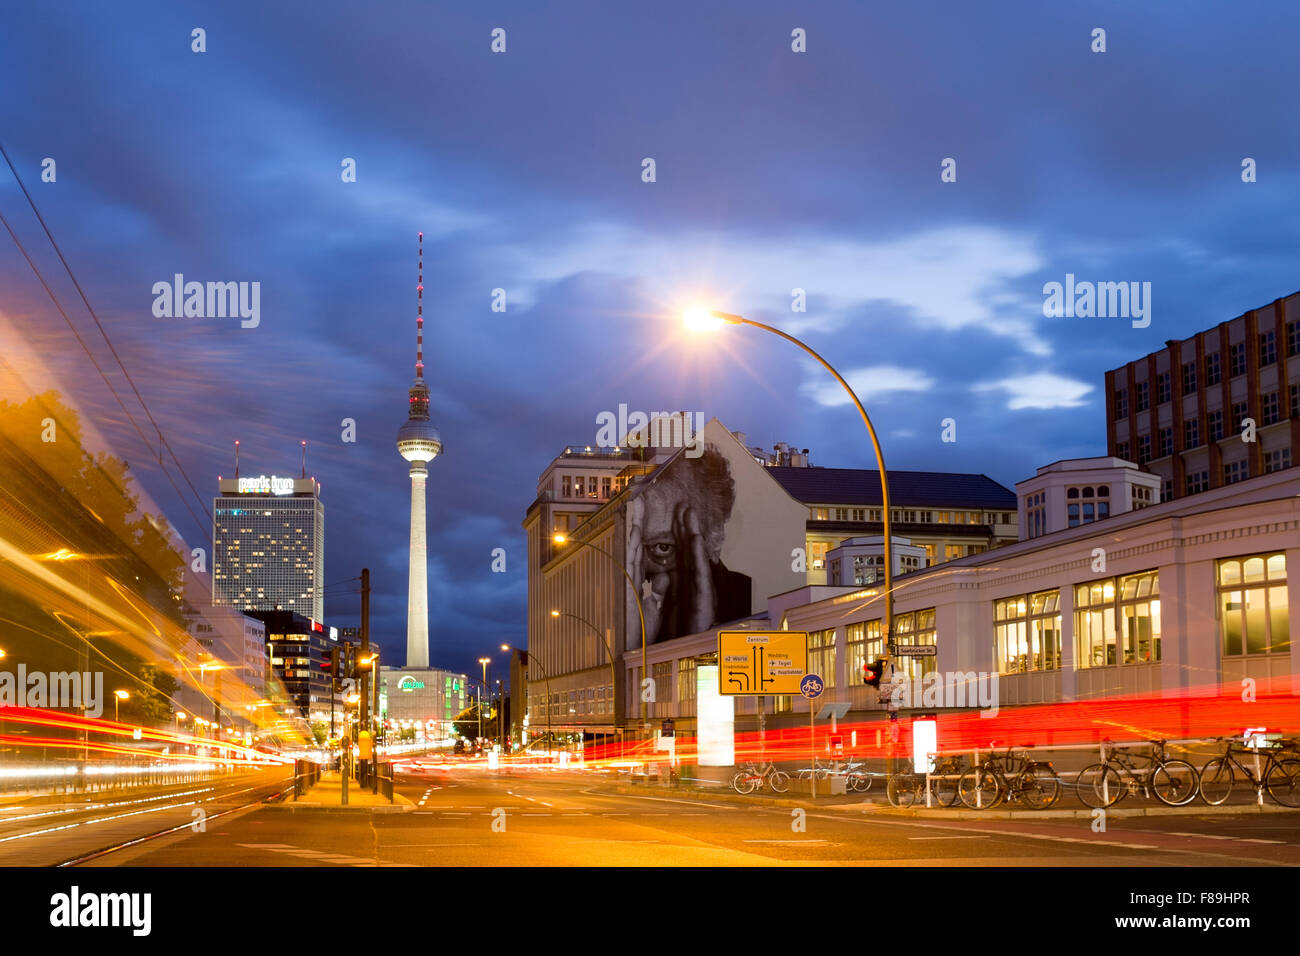 Prenzlauer Allee mit Fernsehturm, Soho House und Park Inn Hotel, Berlin, Deutschland Stockfoto